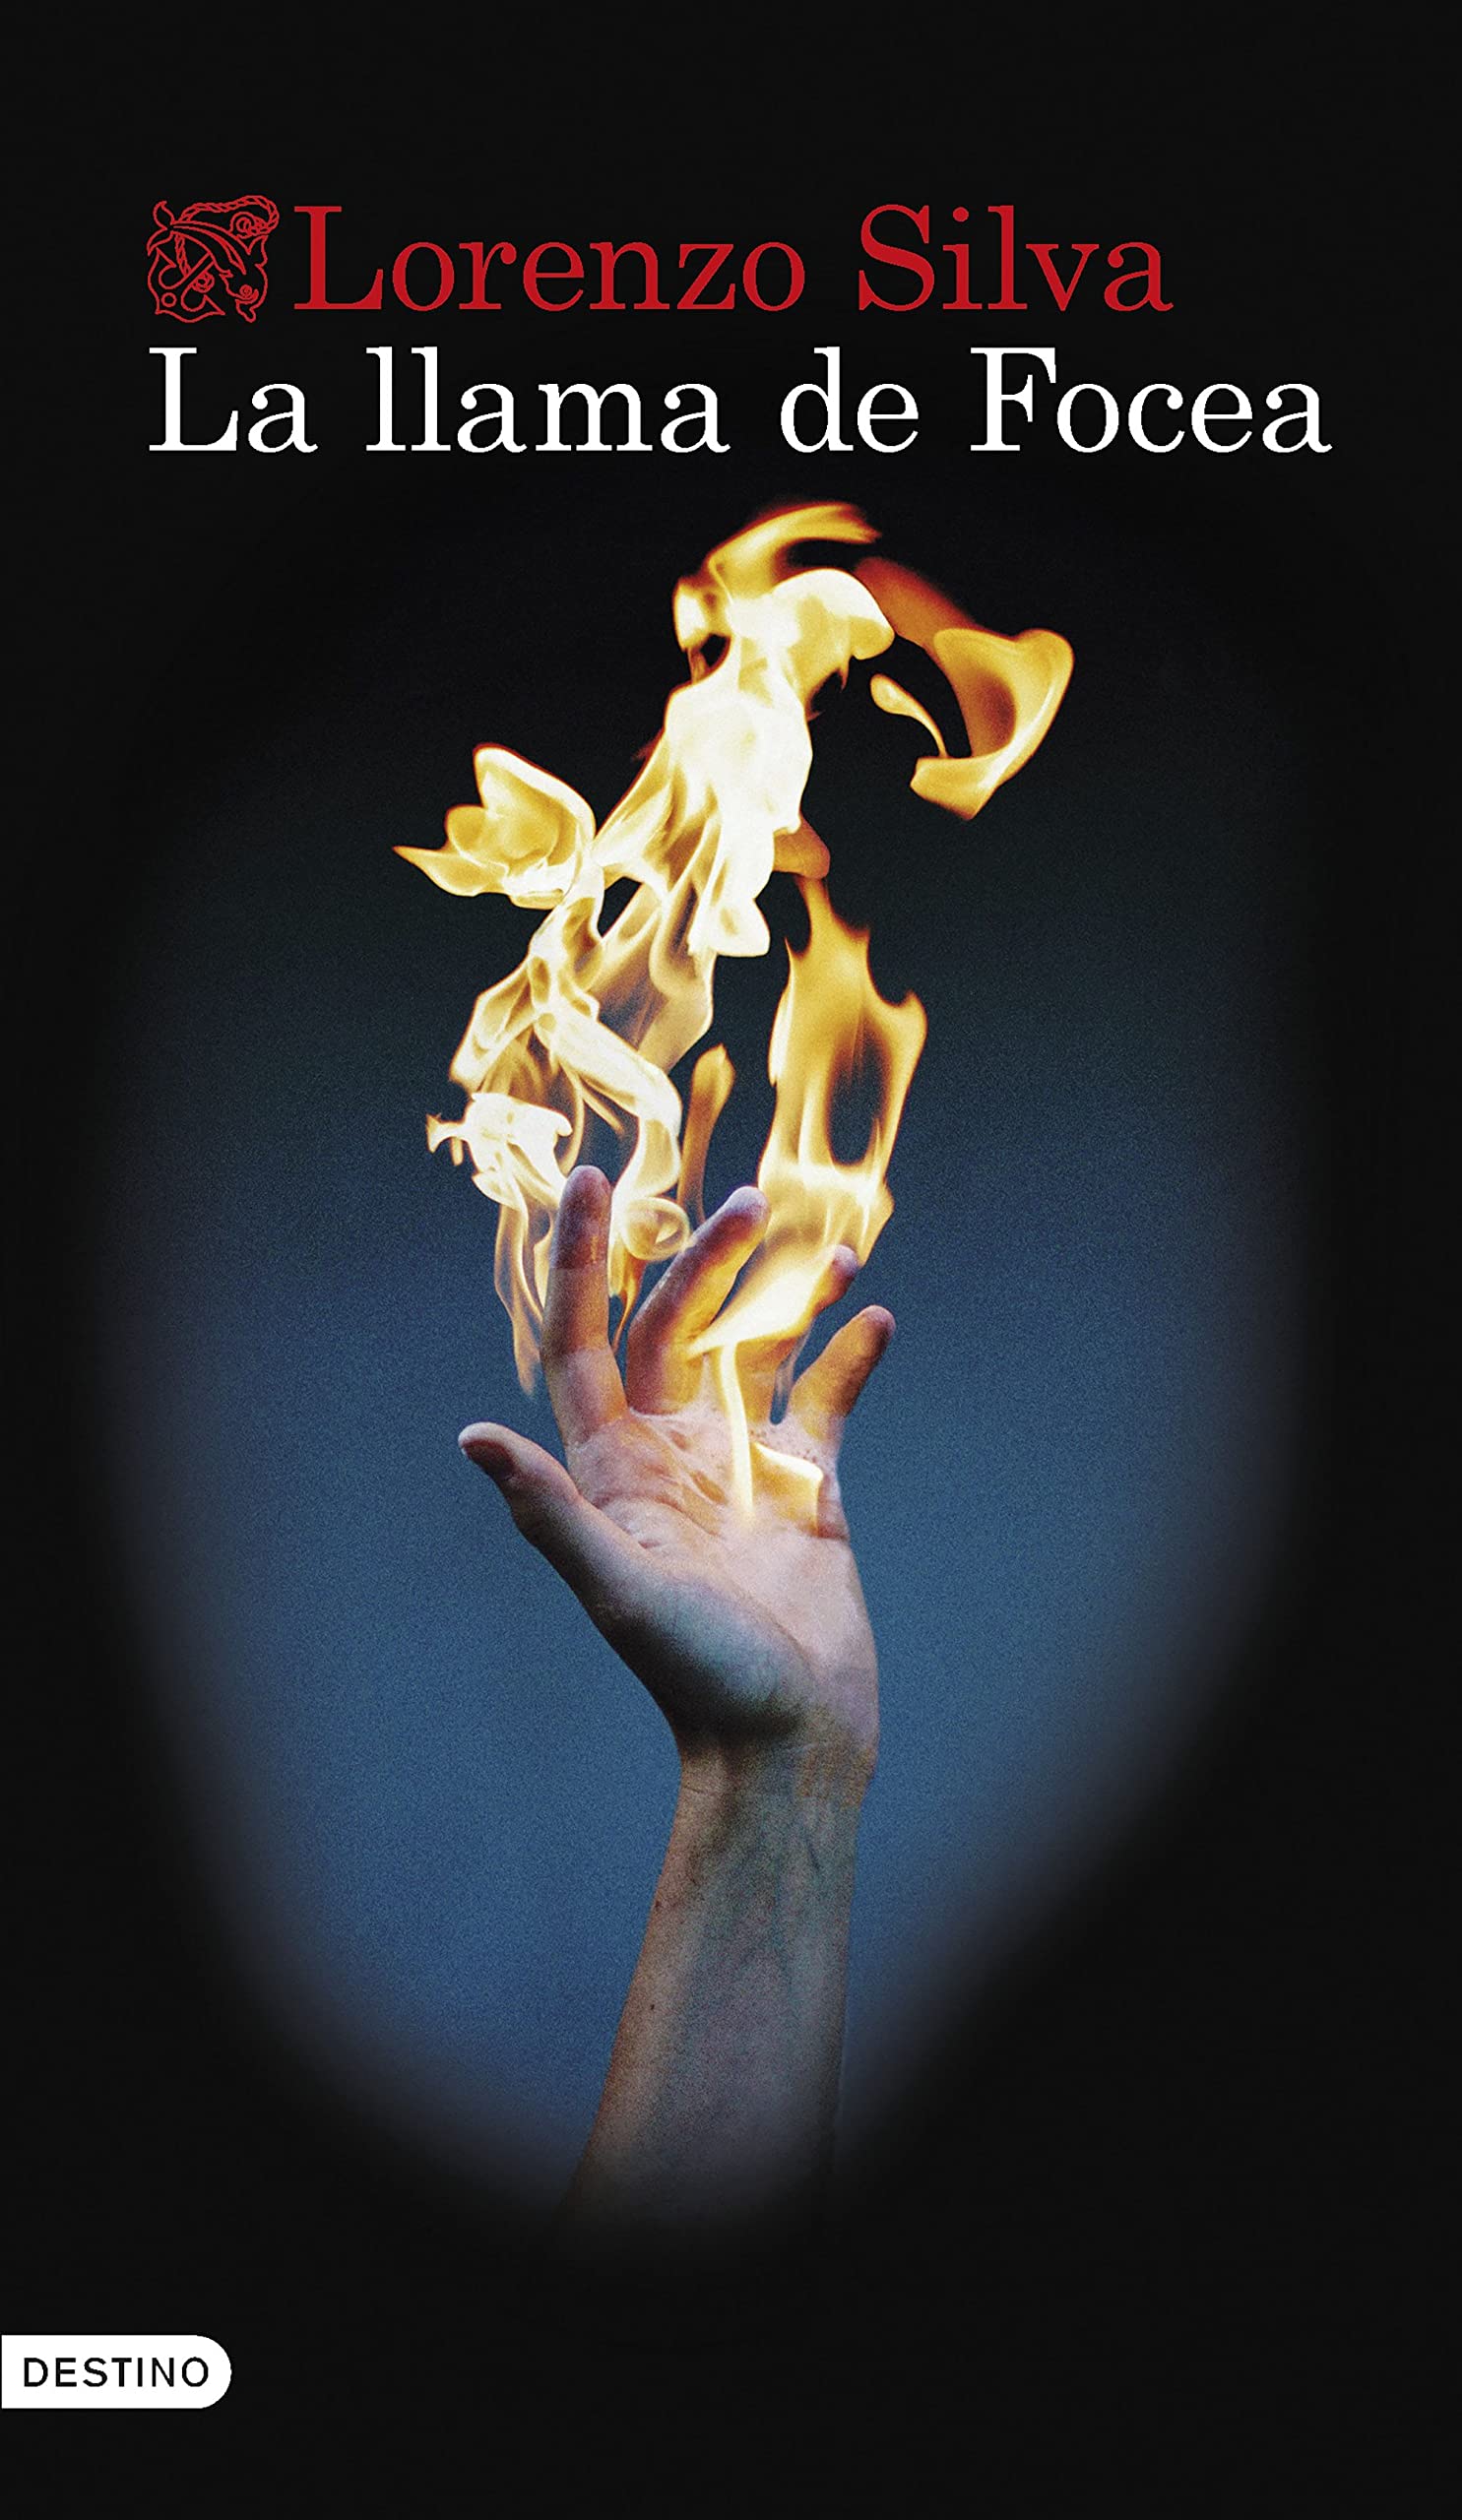 Sobre ‘La llama de Focea’, de Lorenzo Silva